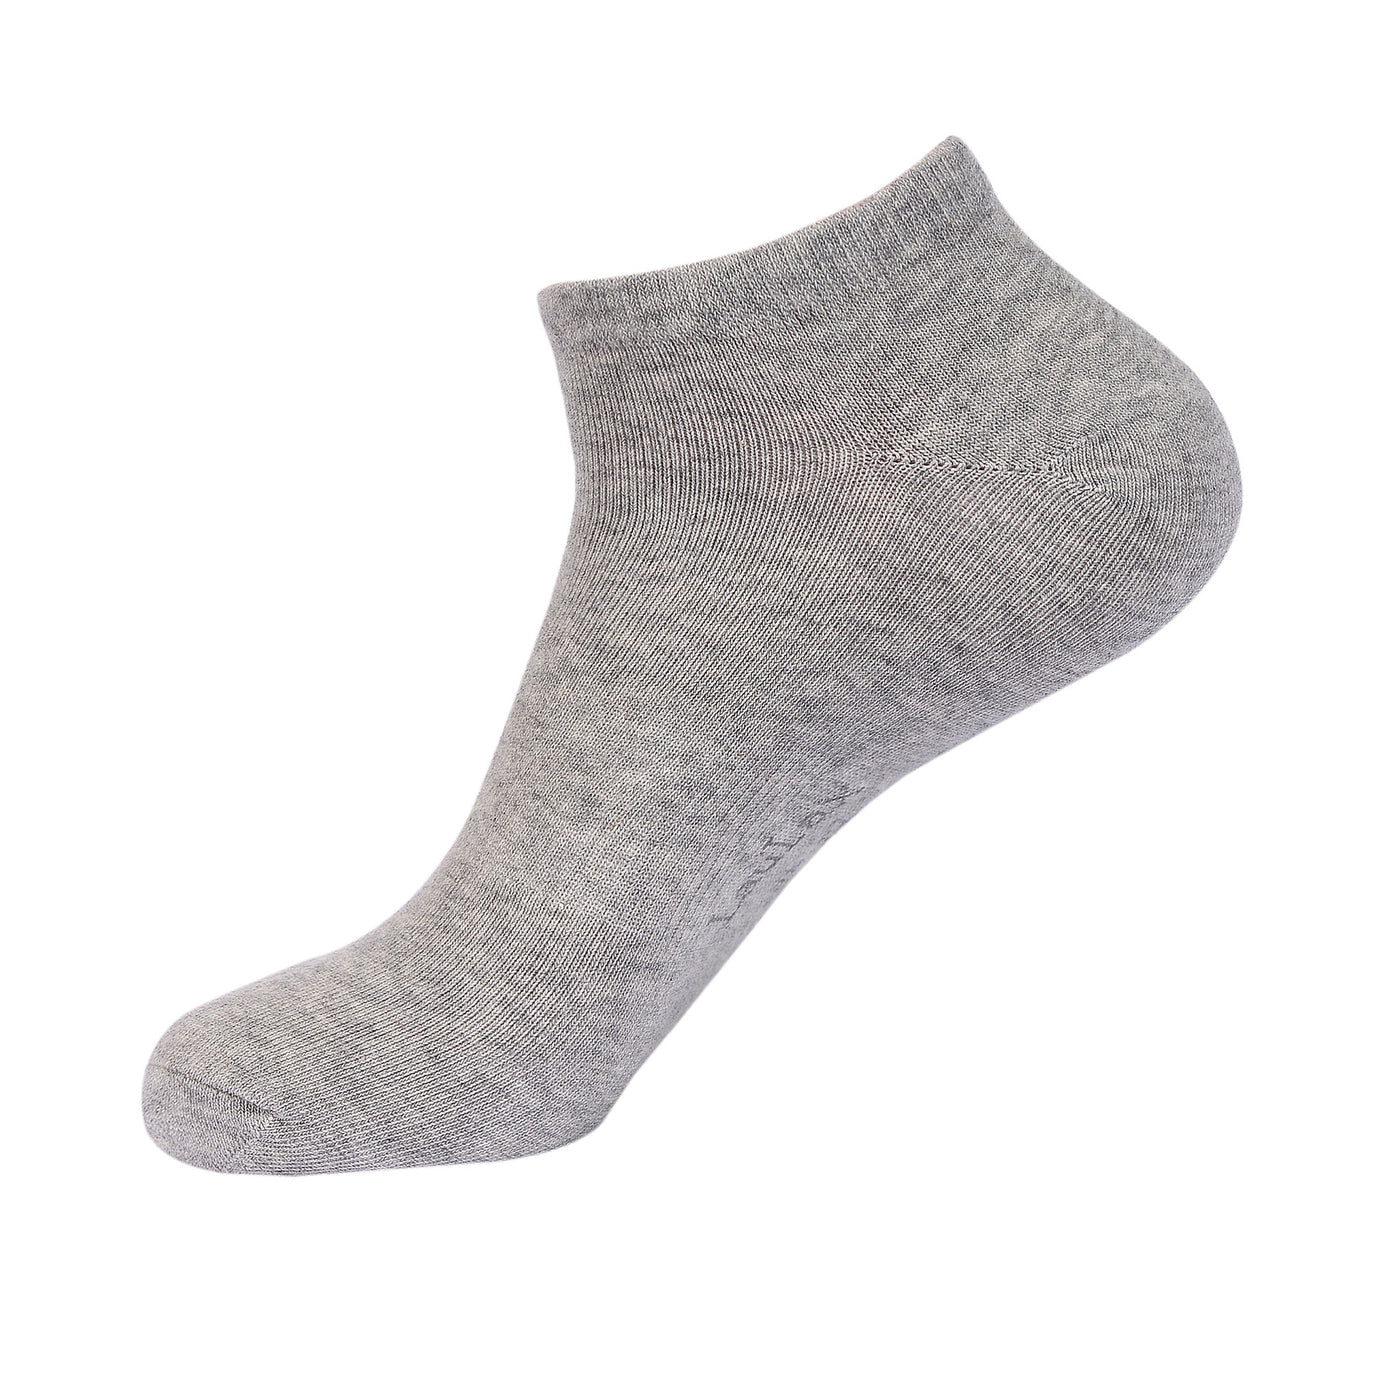 Laulax 6 paires de chaussettes d'entraînement pour soutien de la voûte plantaire en coton peigné fin, gris, taille UK 12-14/Europ 47-49